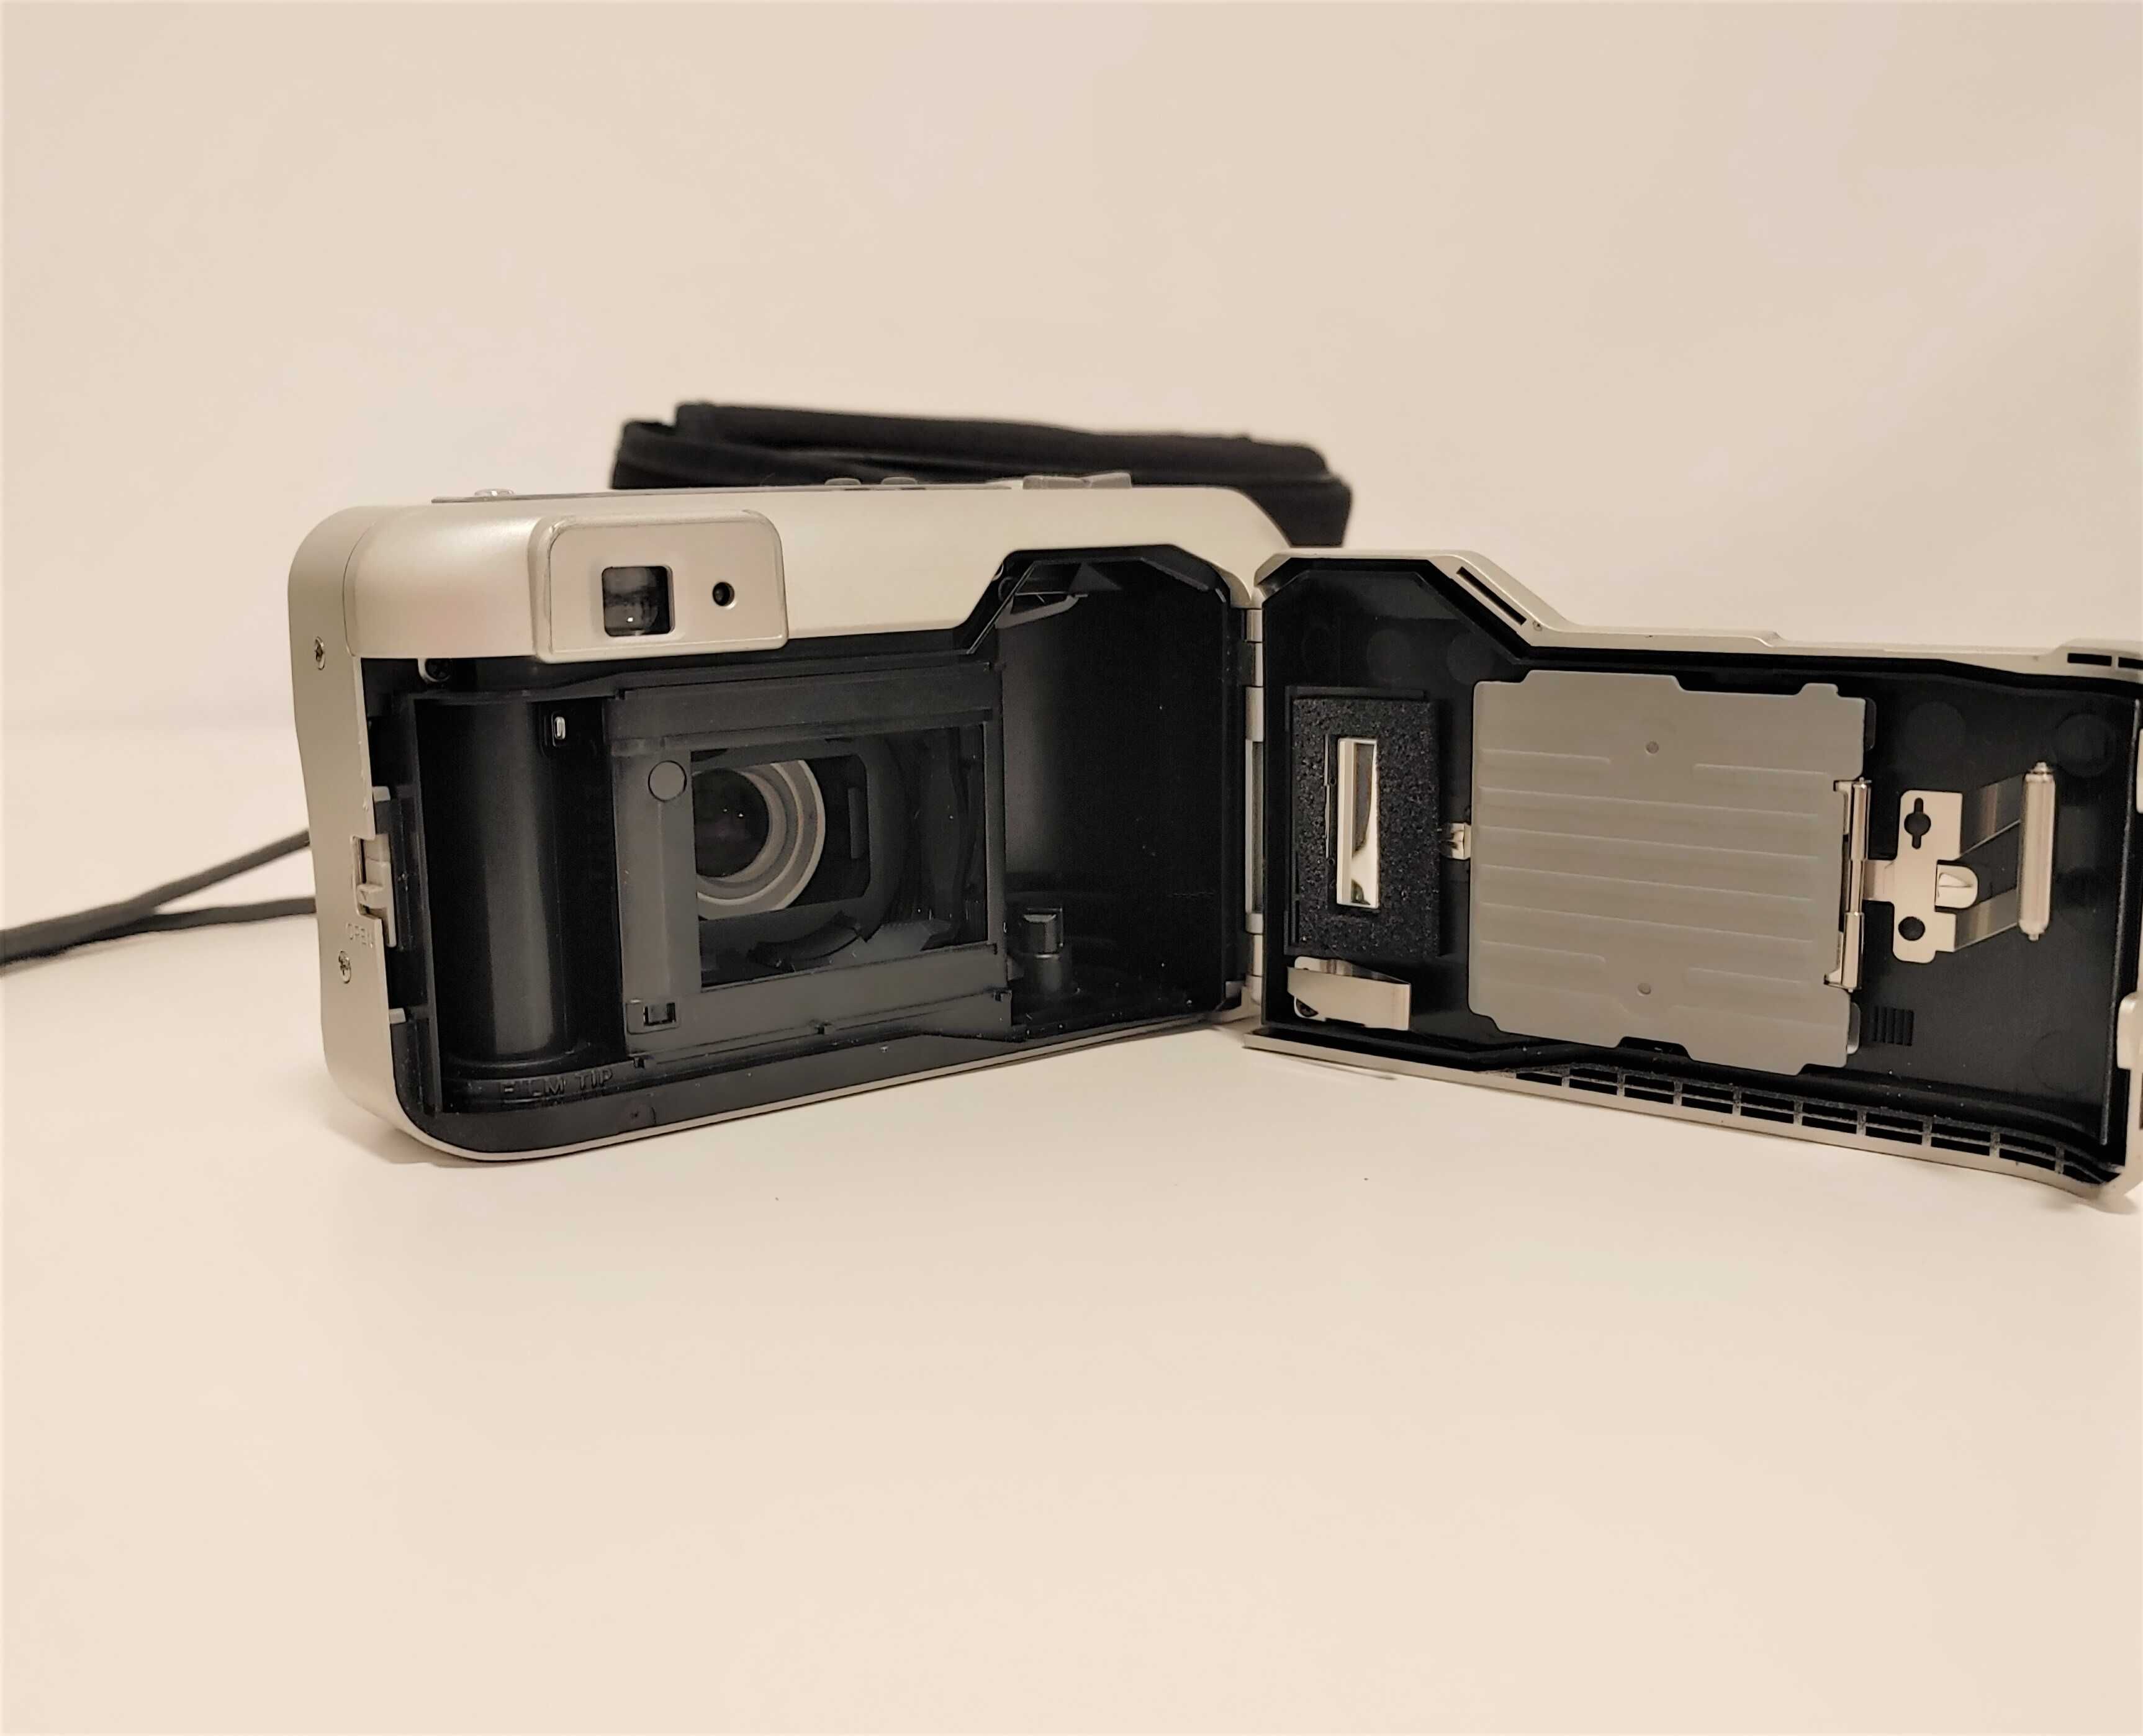 Aparat fotograficzny MINOLTA  110  ZOOM - Wspaniały aparat analogowy